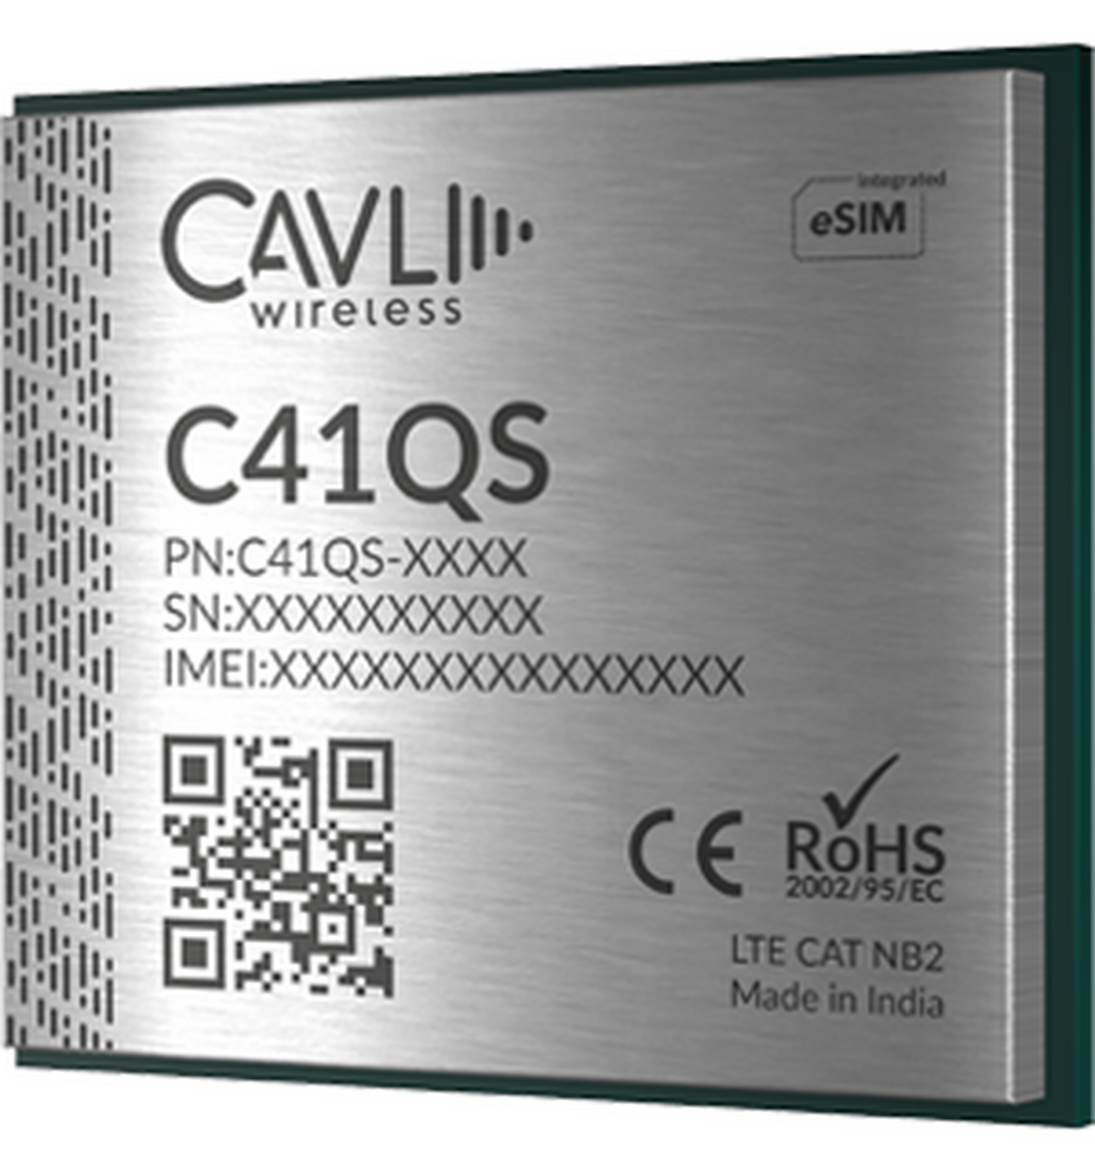 Cavli C41 QS